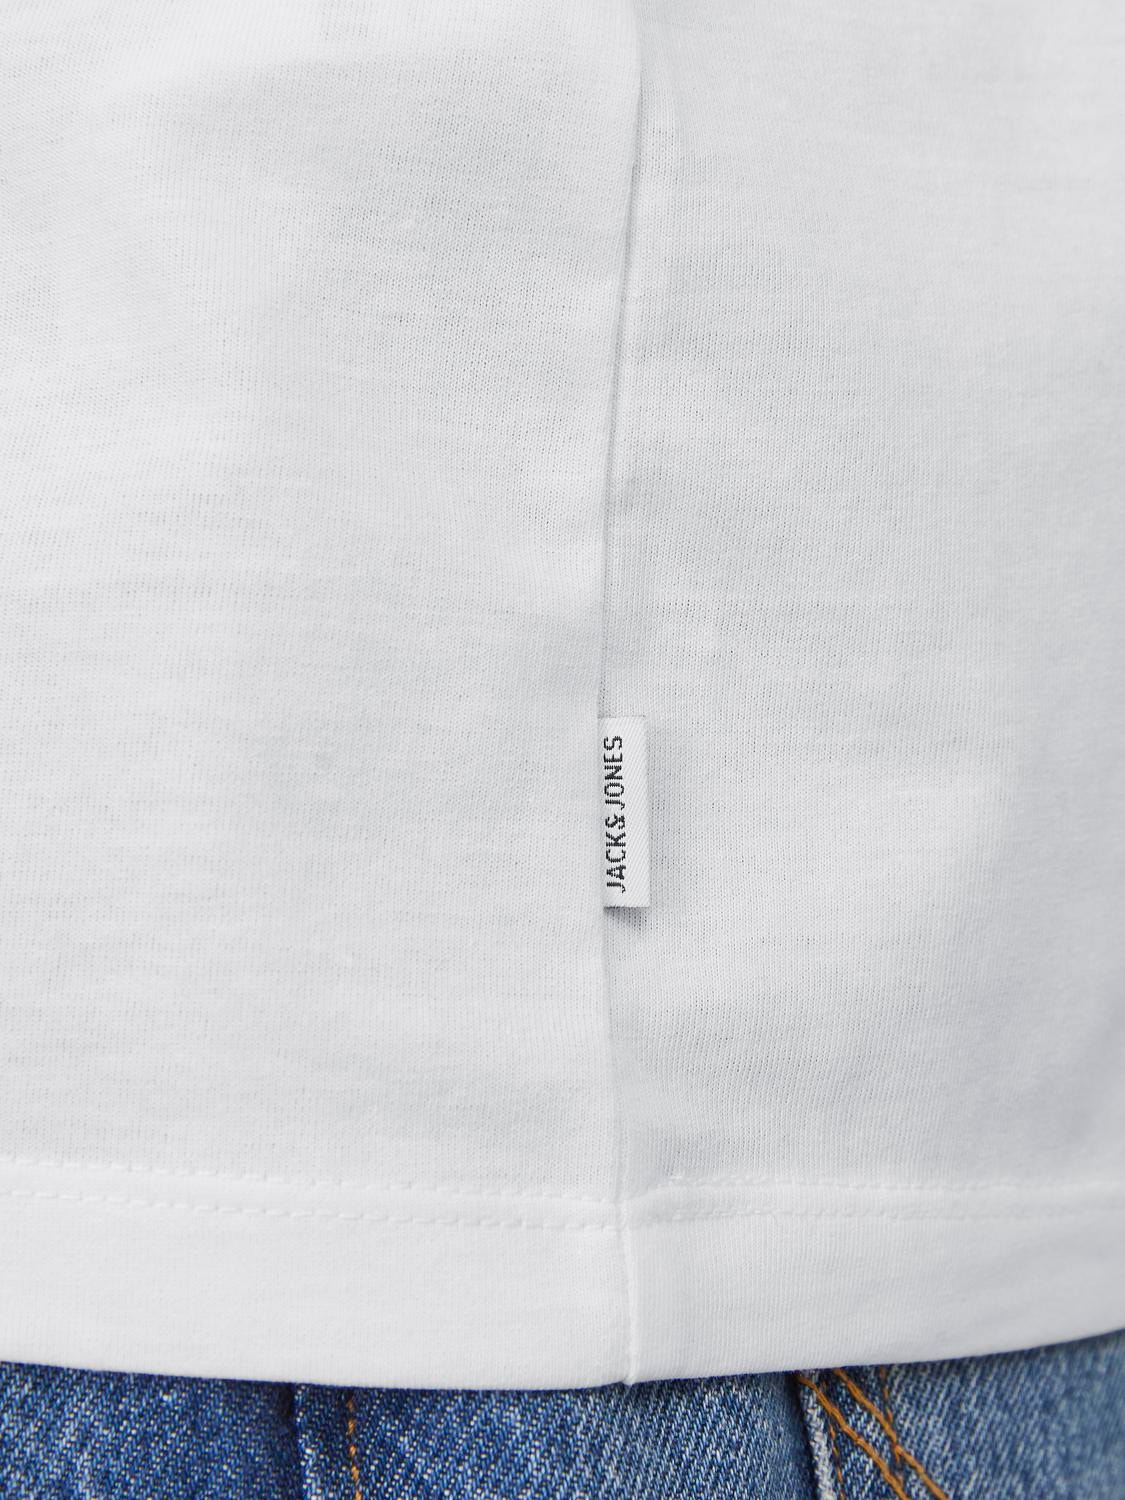 Jack & Jones Gedruckt Rundhals T-shirt -White - 12249184